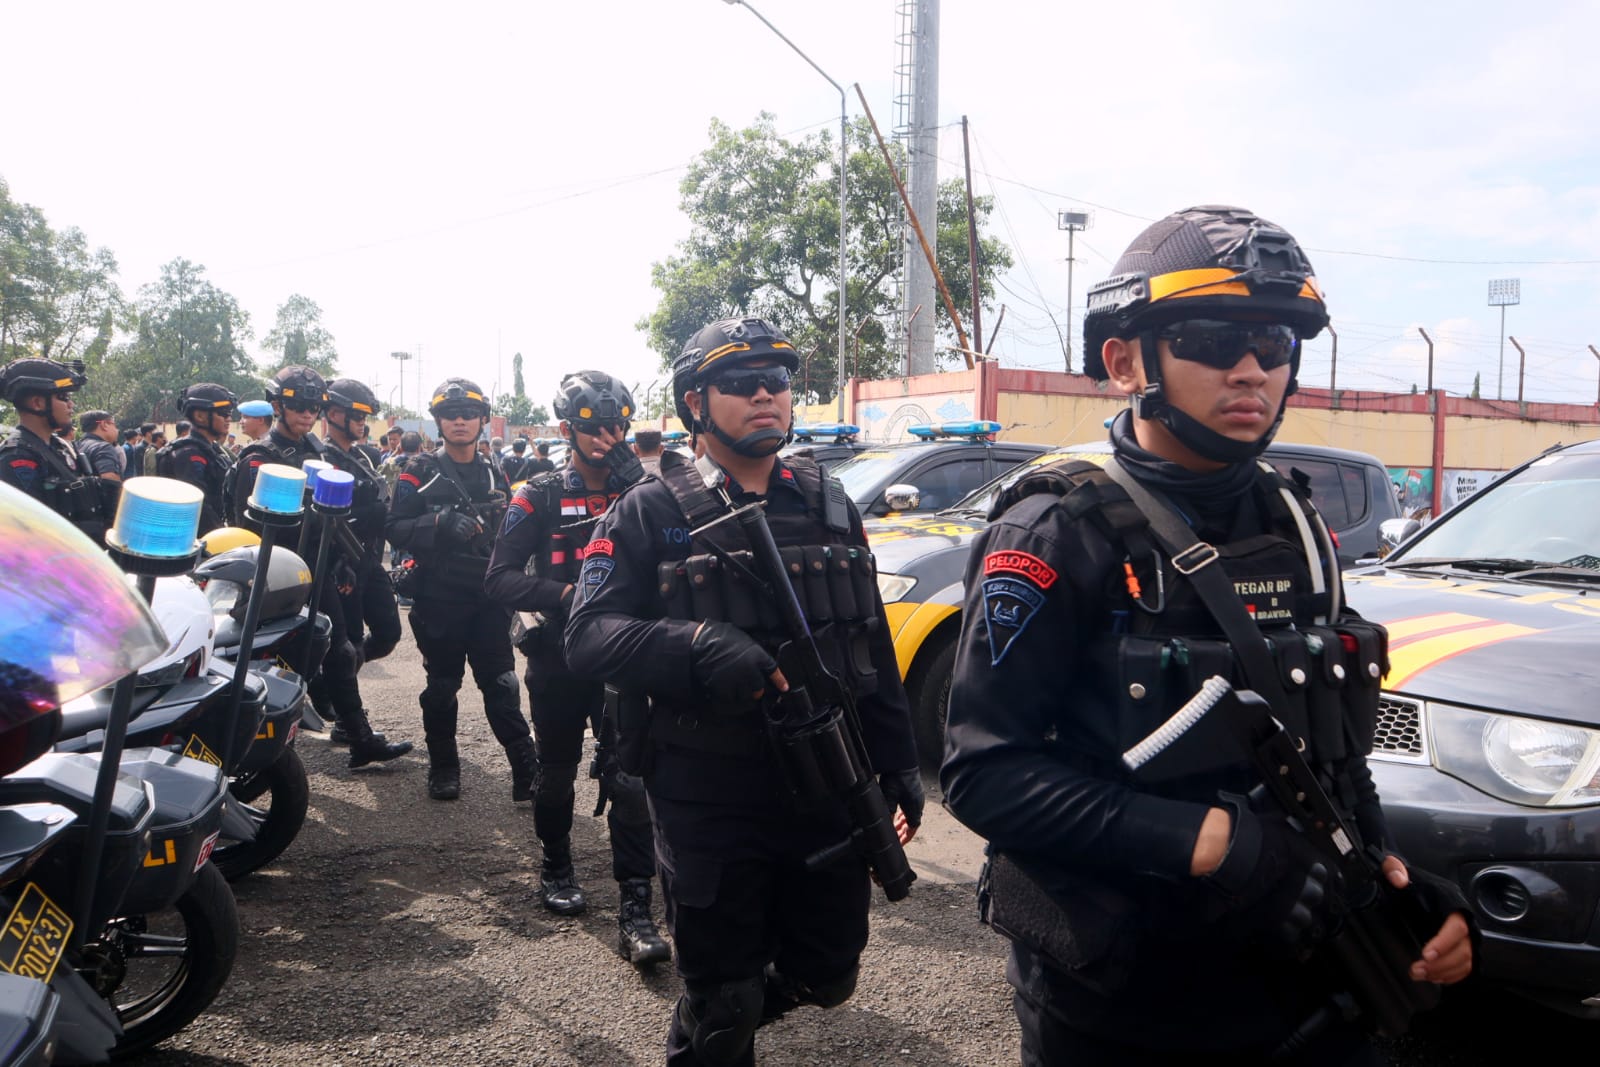 Pengamanan Arus Mudik di Banyumas, Polresta Siagakan Ratusan Personil dan Siapkan Tim Urai Kemacetan